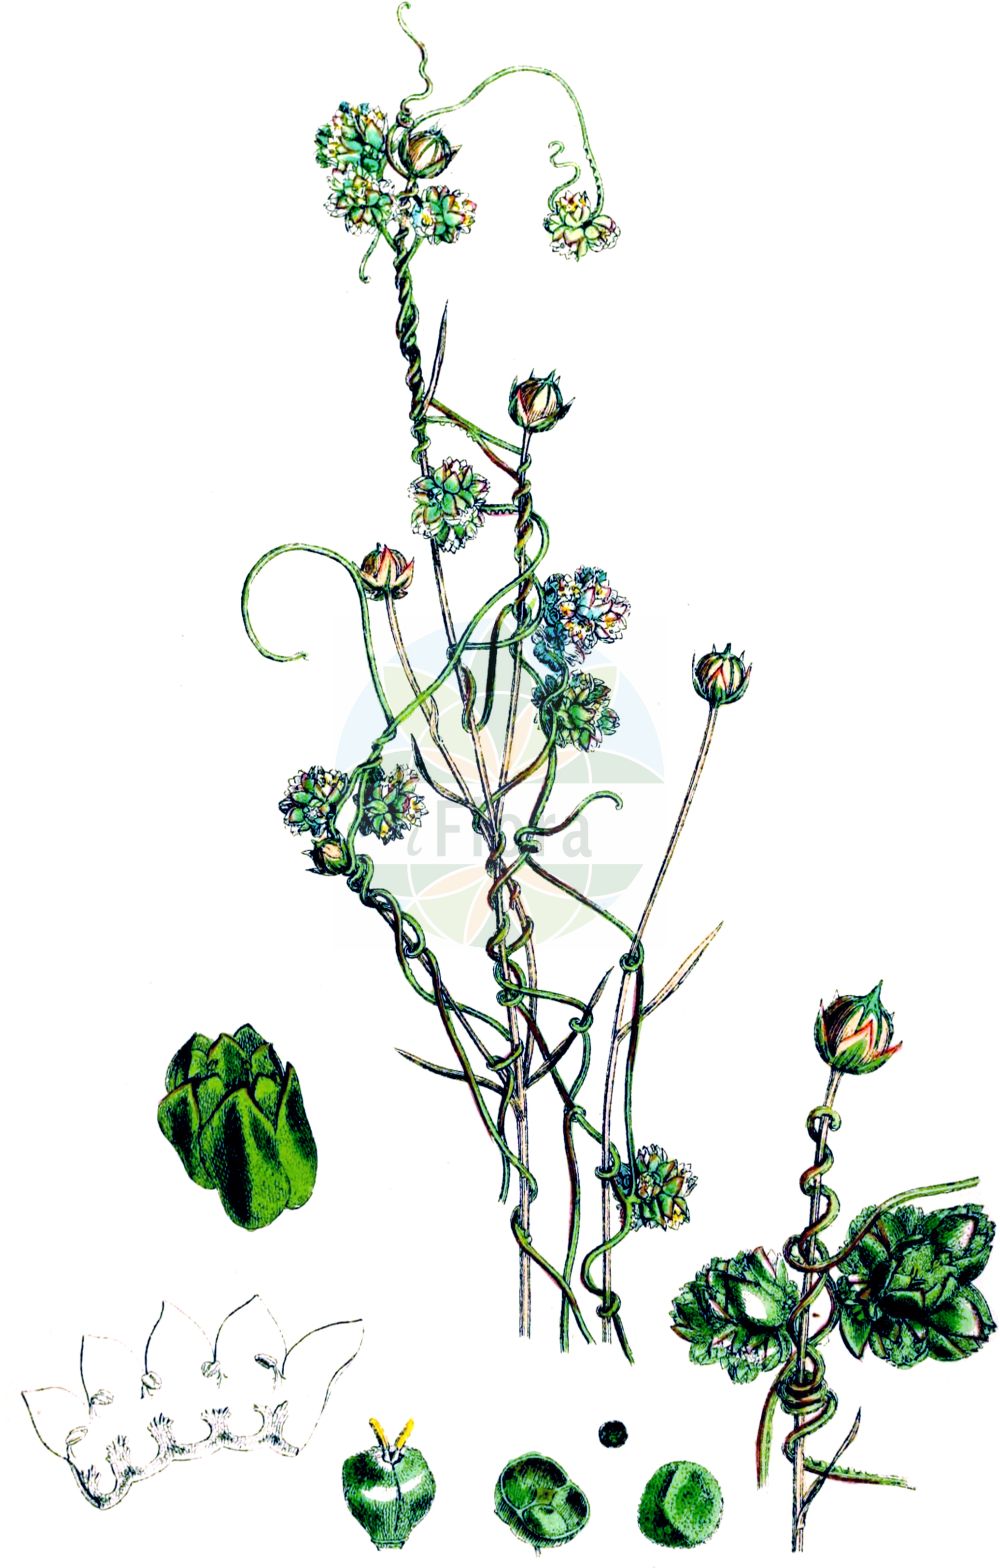 Historische Abbildung von Cuscuta epilinum (Flachs-Seide - Flax Dodder). Das Bild zeigt Blatt, Bluete, Frucht und Same. ---- Historical Drawing of Cuscuta epilinum (Flachs-Seide - Flax Dodder). The image is showing leaf, flower, fruit and seed.(Cuscuta epilinum,Flachs-Seide,Flax Dodder,Cuscuta epilinum,Flachs-Seide,Flachs-Teufelszwirn,Lein-Seide,Flax Dodder,Cuscuta,Seide,Dodder,Convolvulaceae,Windengewächse,Bindweed family,Blatt,Bluete,Frucht,Same,leaf,flower,fruit,seed,Sowerby (1790-1813))